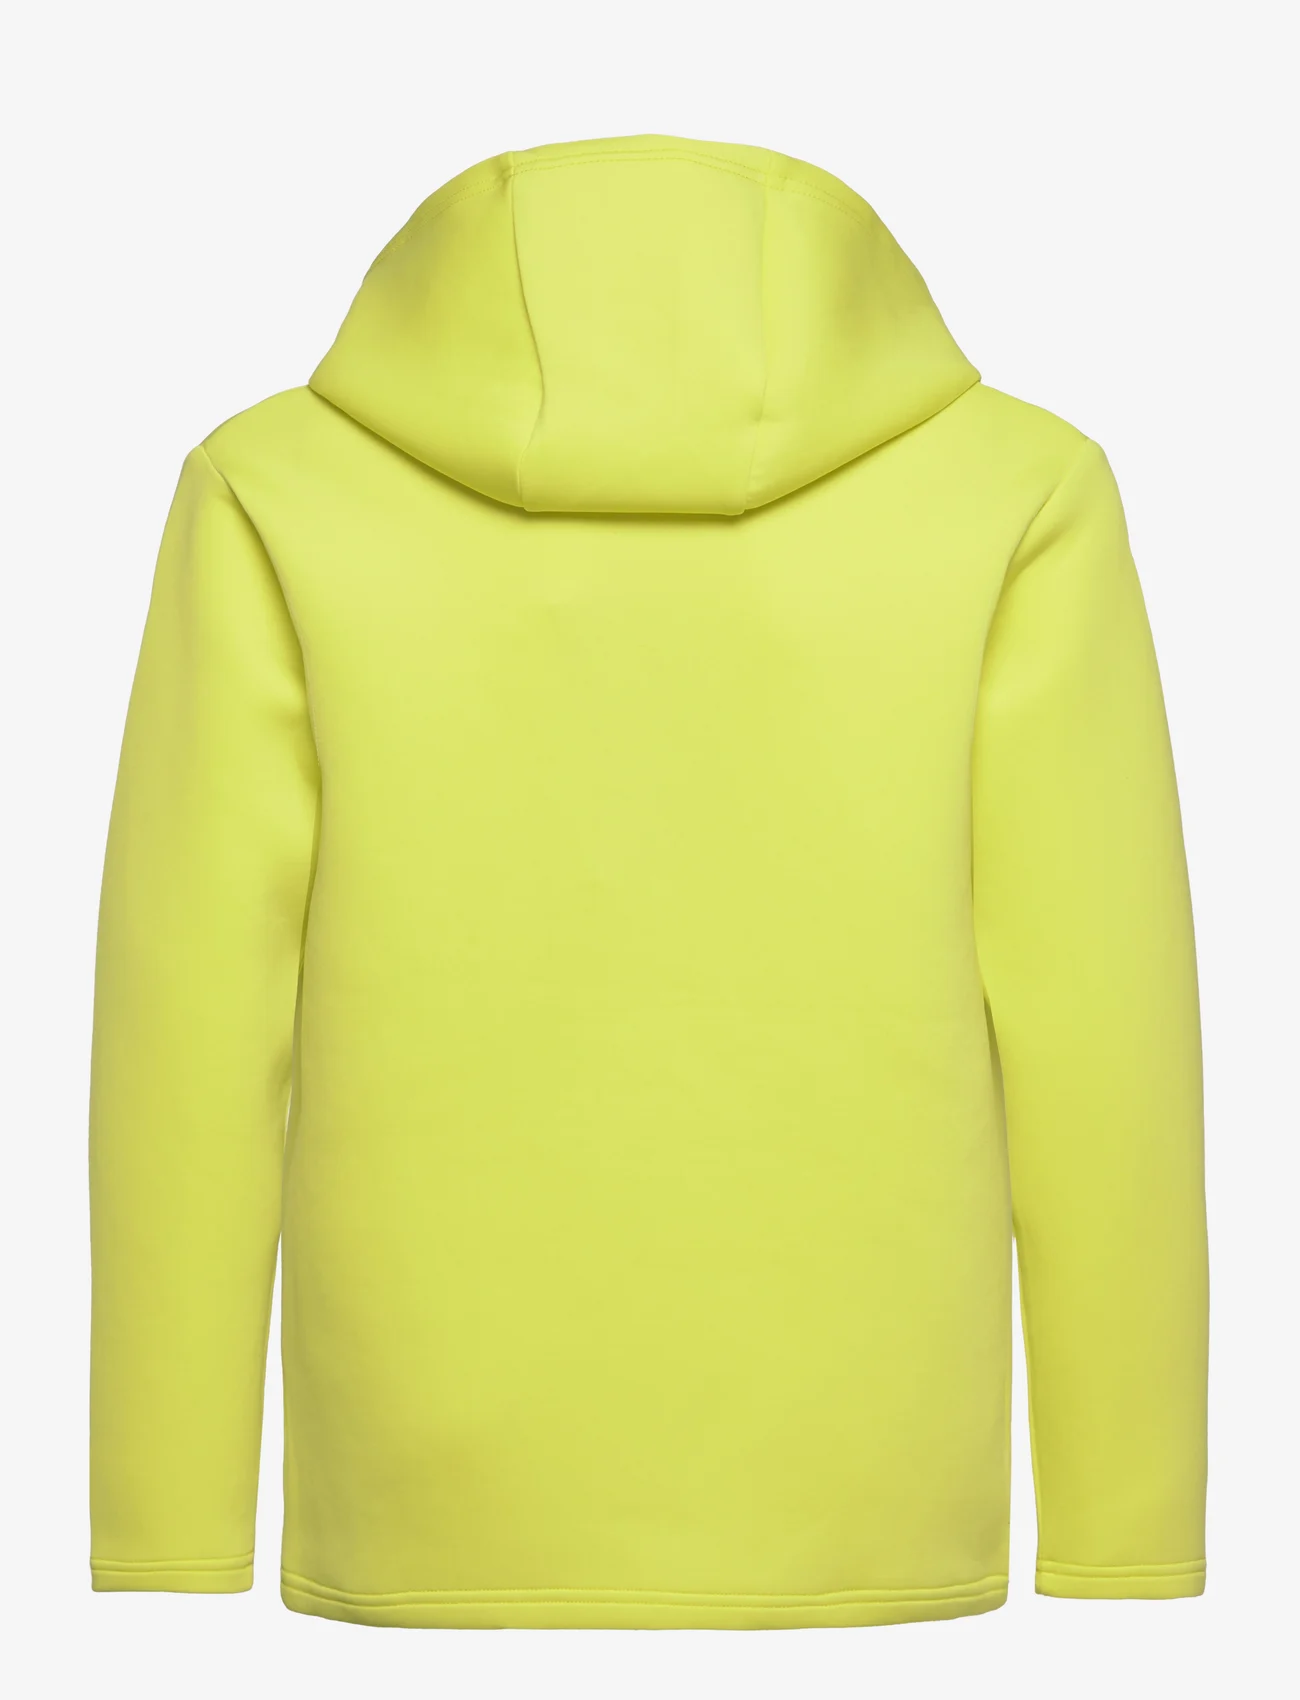 Reima - Sweater, Toimekas - hupparit - yellow green - 1